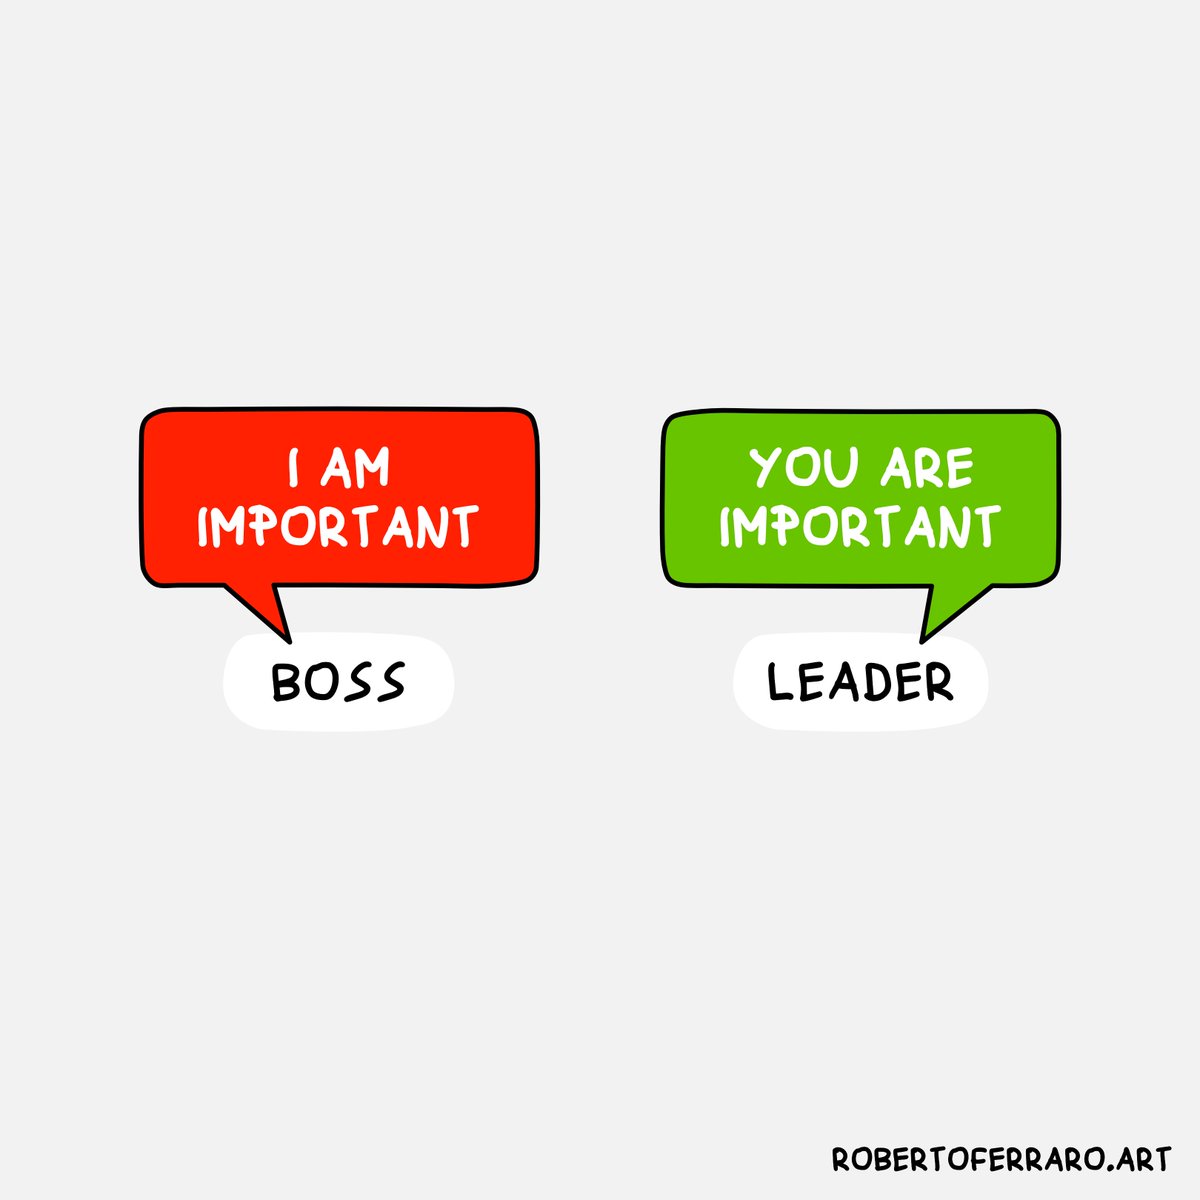 Bad leaders vs Good leaders.